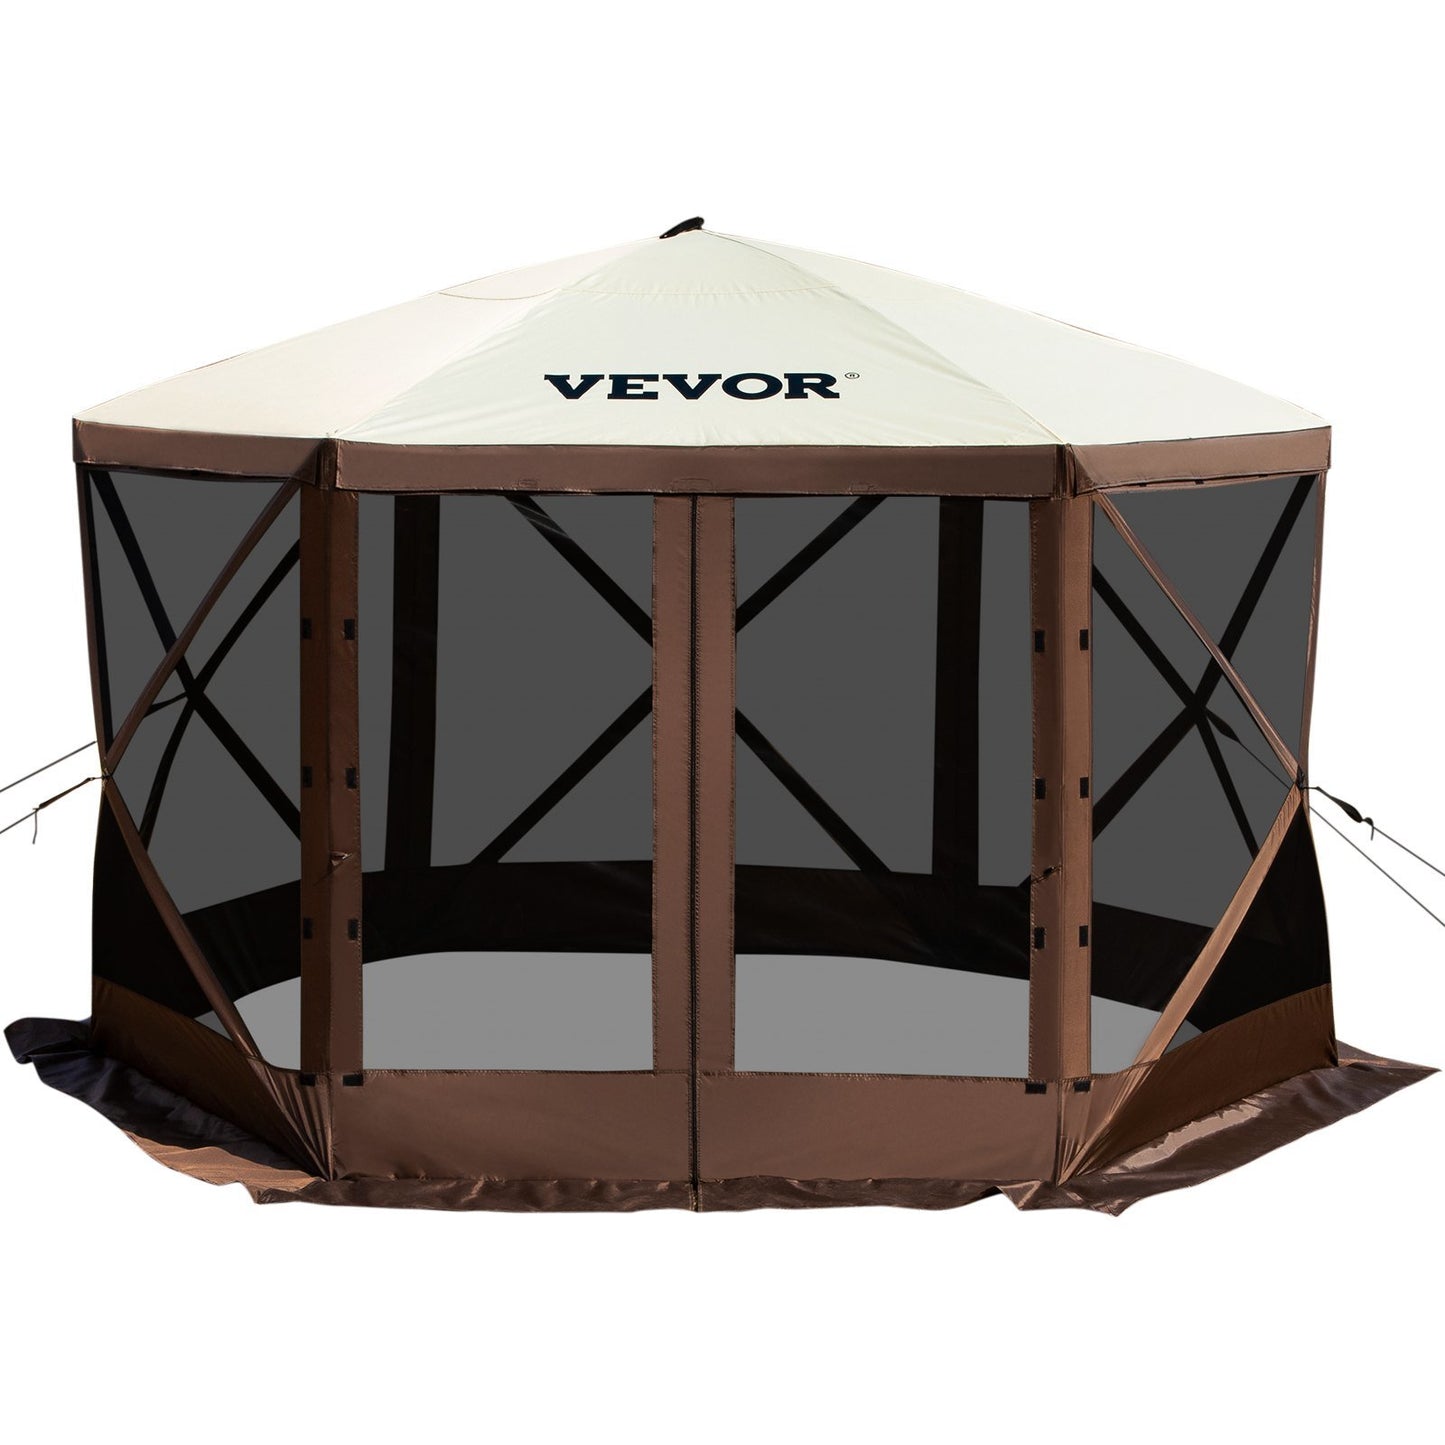 VEVOR Camping Gazebo Screen Tent